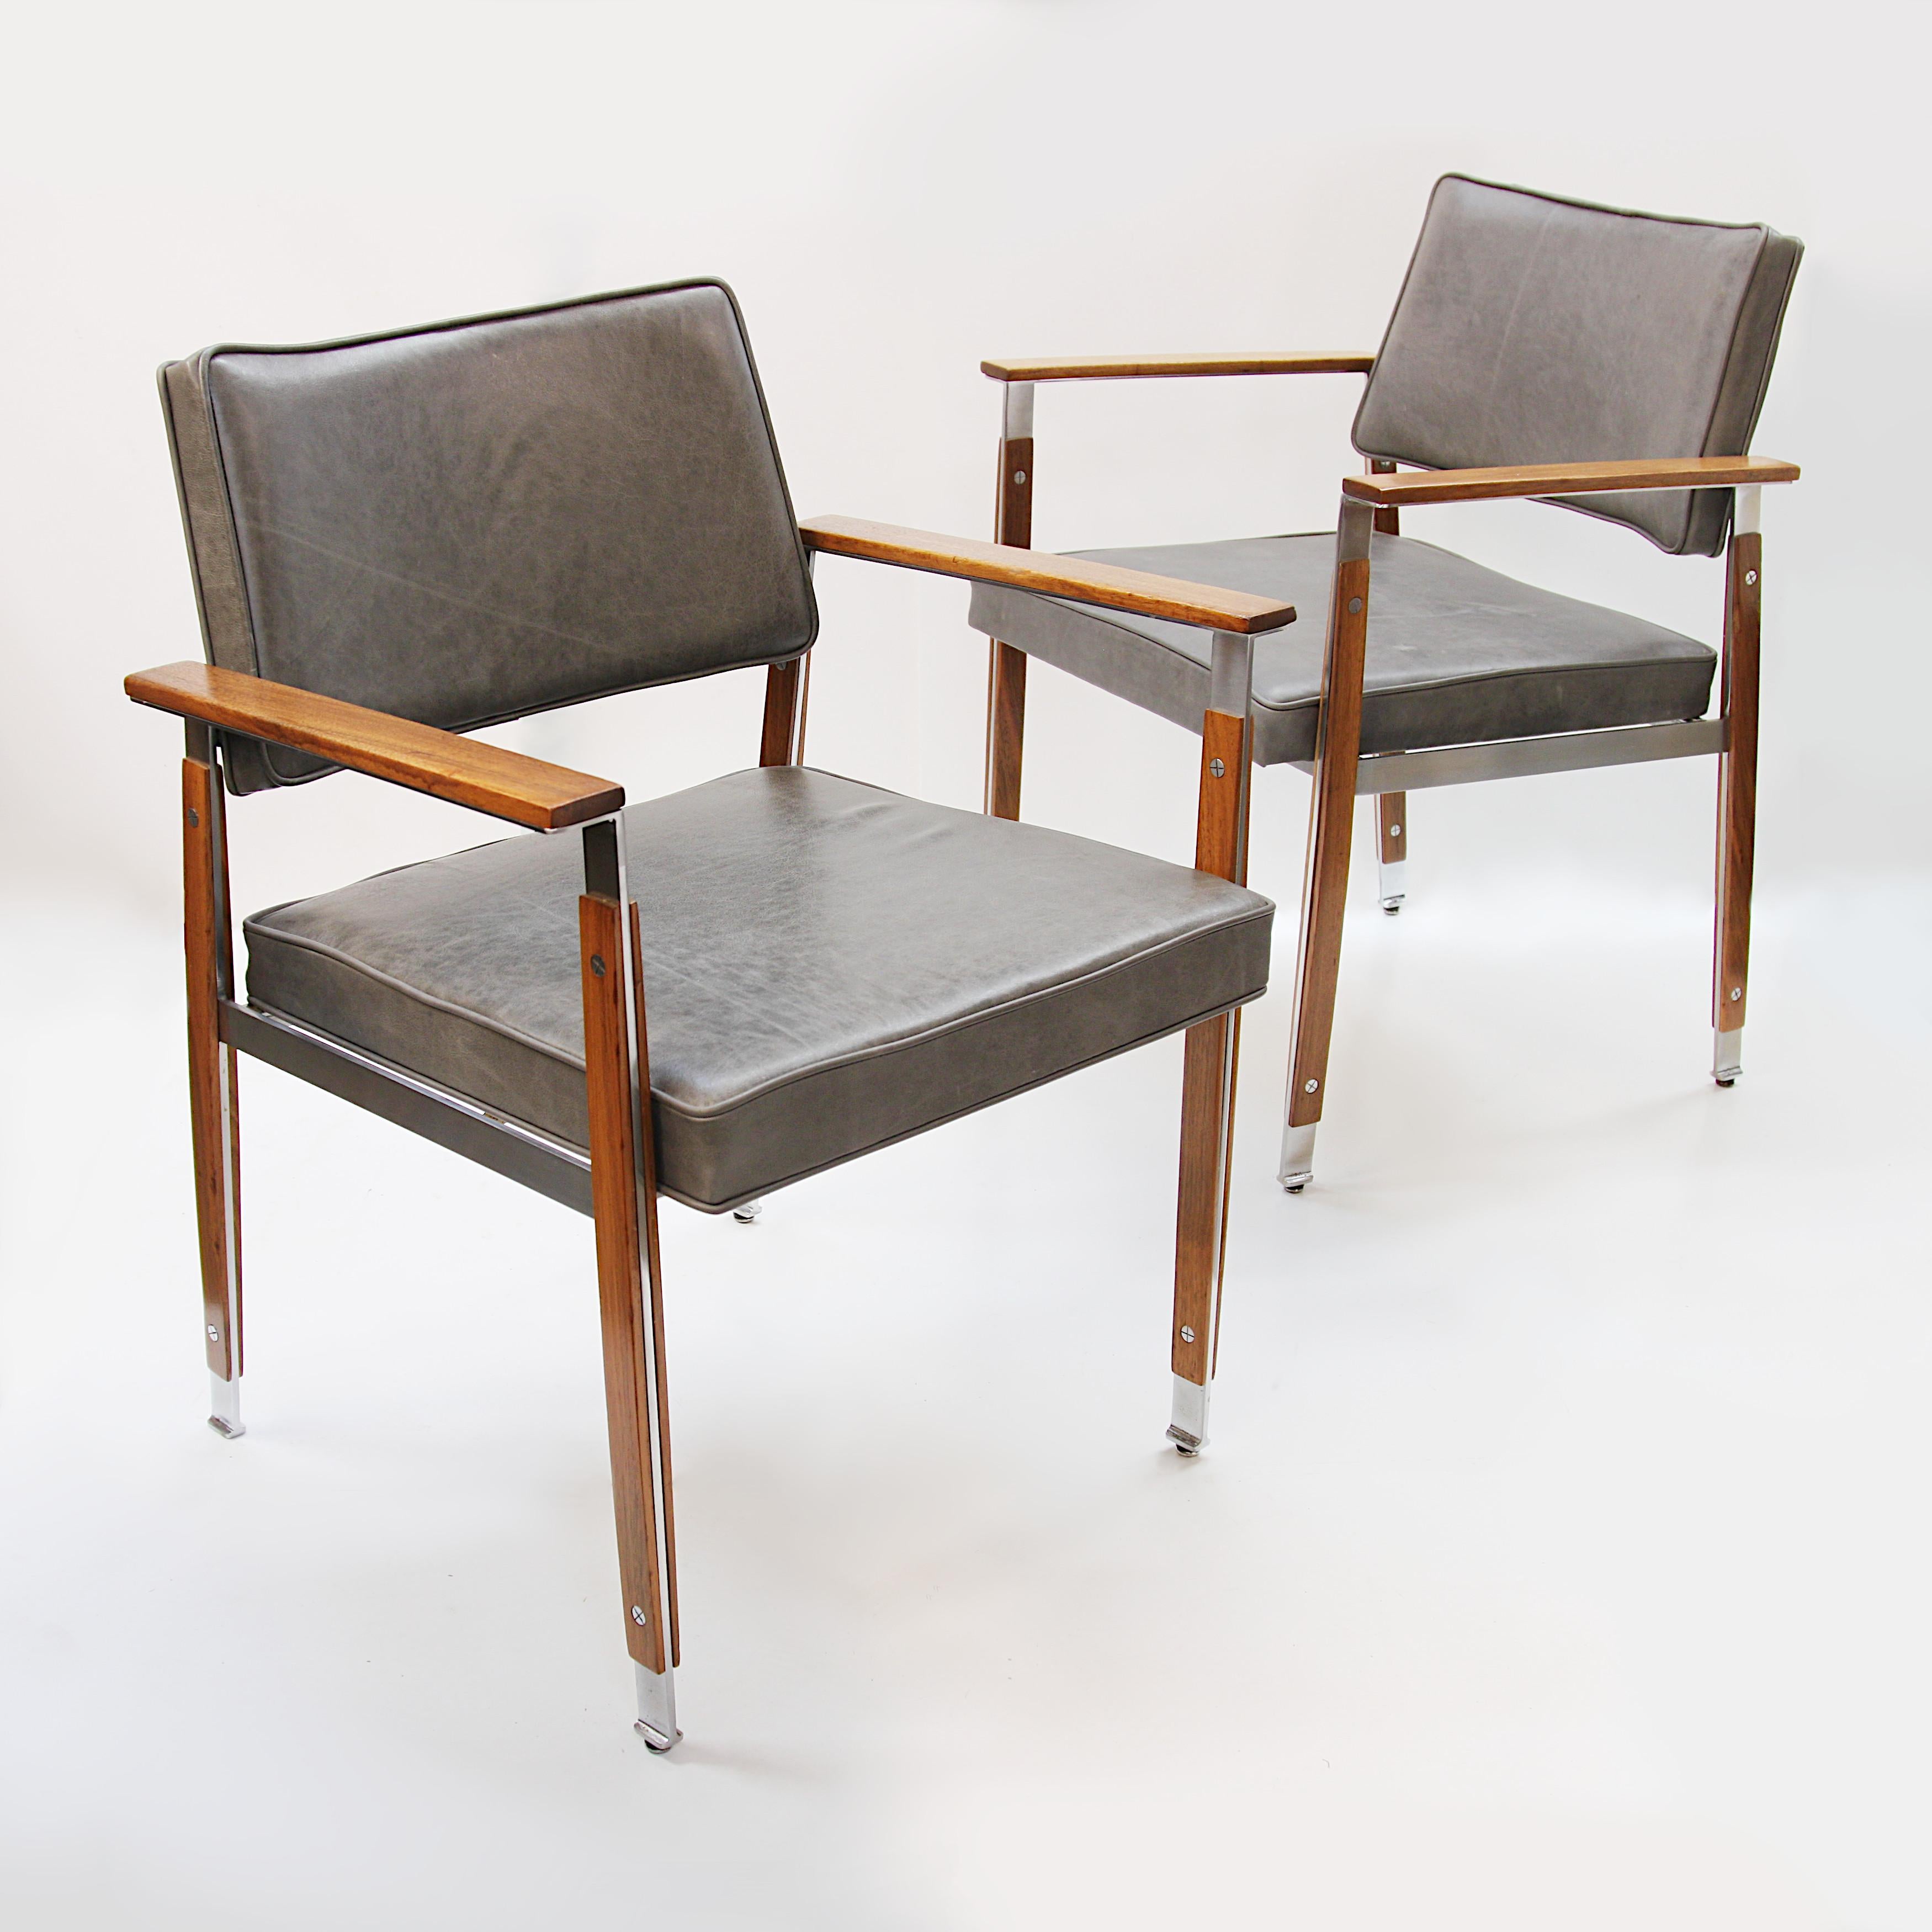 Rare paire de fauteuils conçus par William B Sklaroff pour la ligne de meubles ultra five group de la Robert John Furniture Company. Les chaises sont dotées d'un cadre unique en acier inoxydable recouvert de fines lattes en noyer qui rappellent le